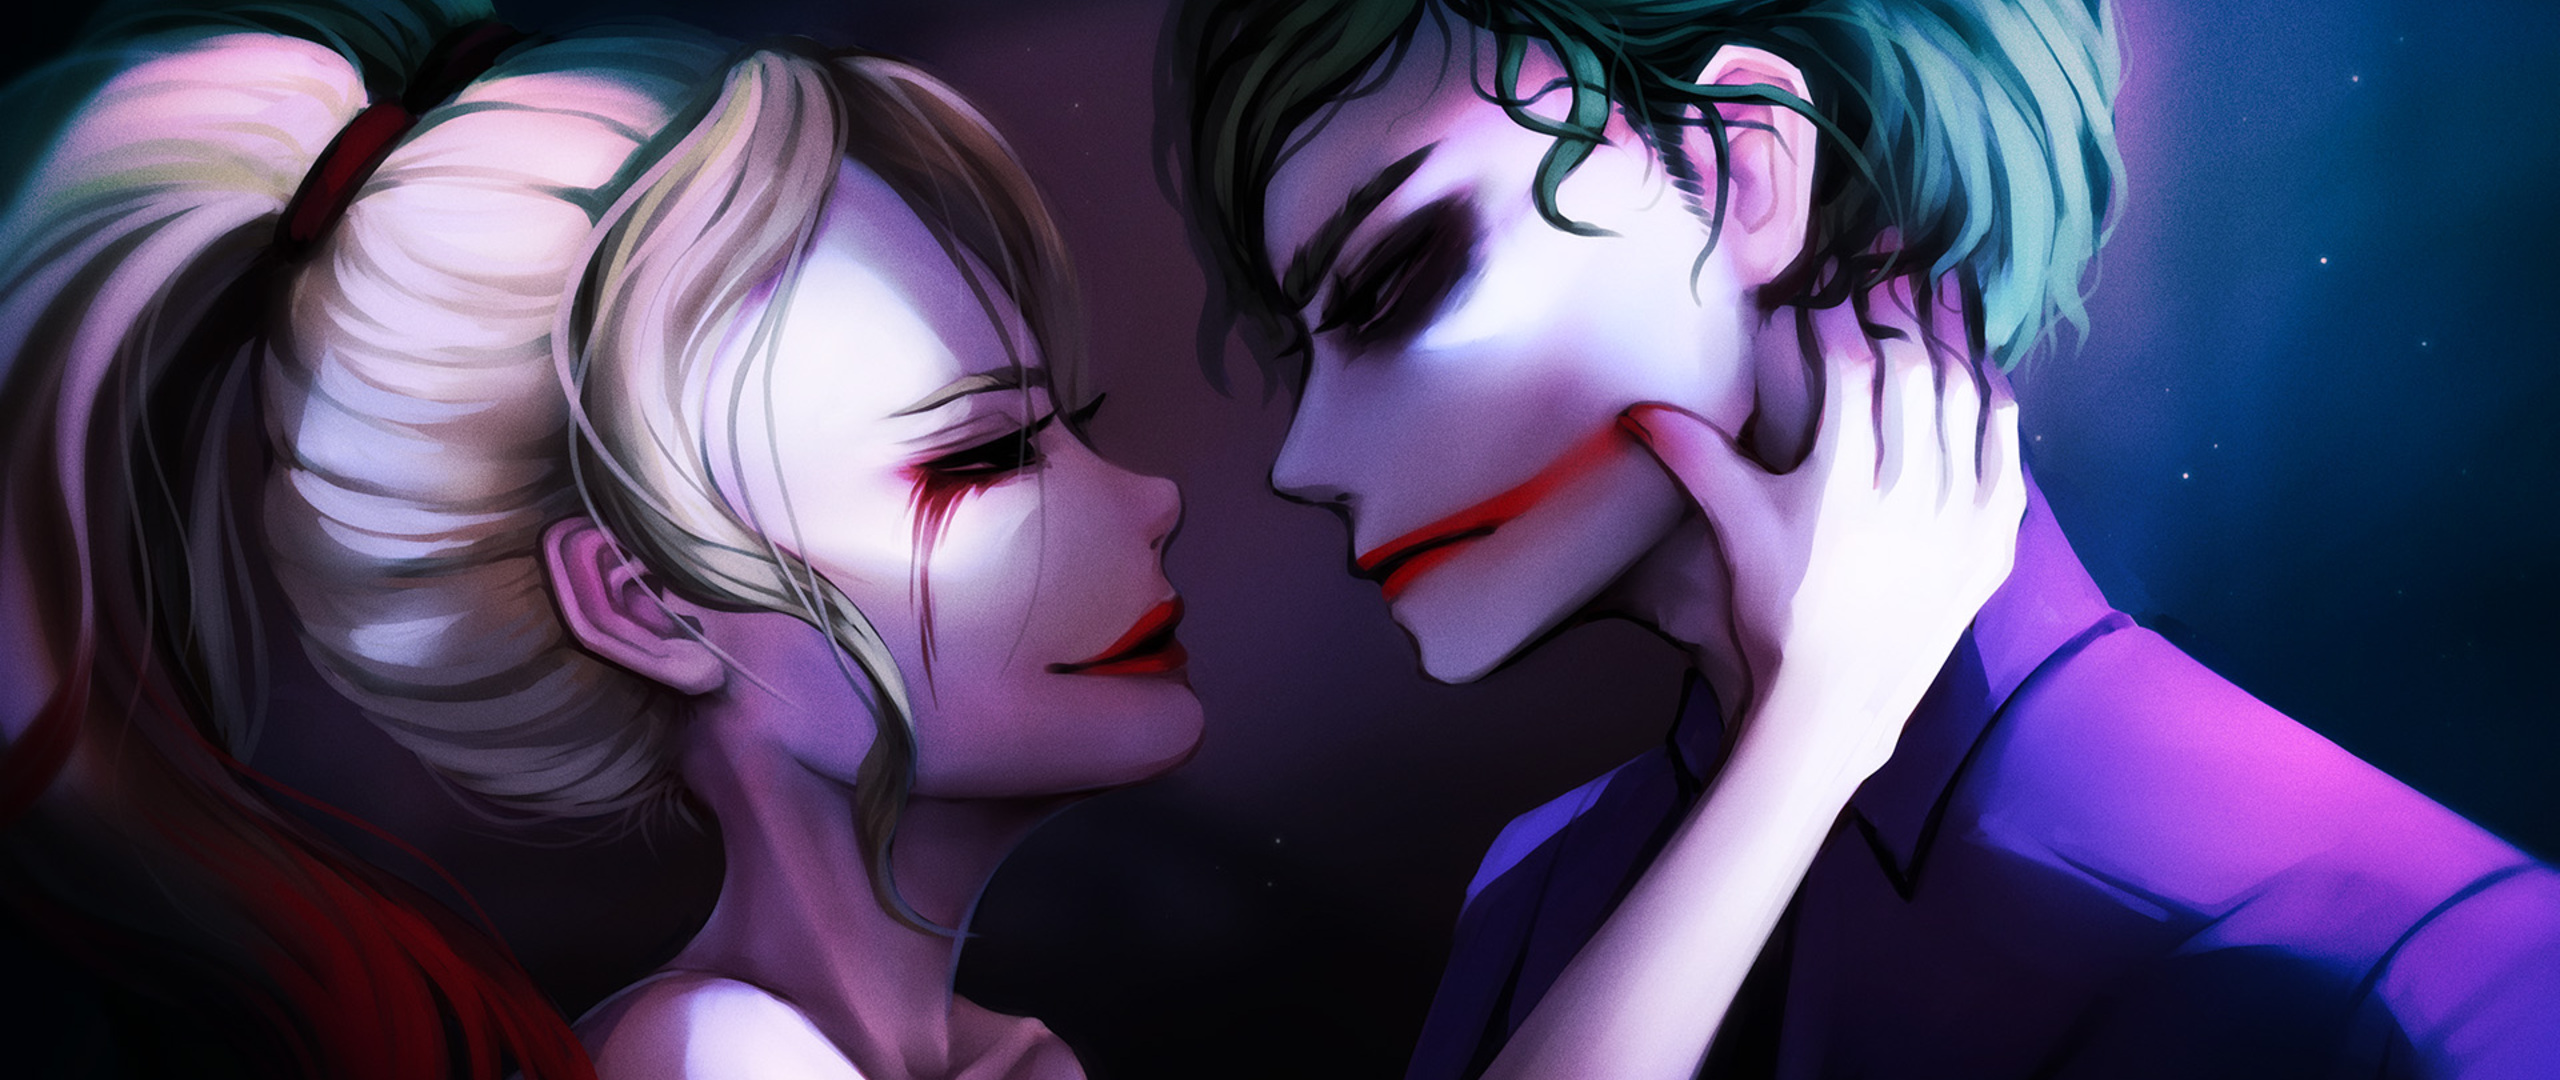 Harley Quinn Joker Valentine Fantasy In 2560x1080 Resolution. harley-quinn-joker...